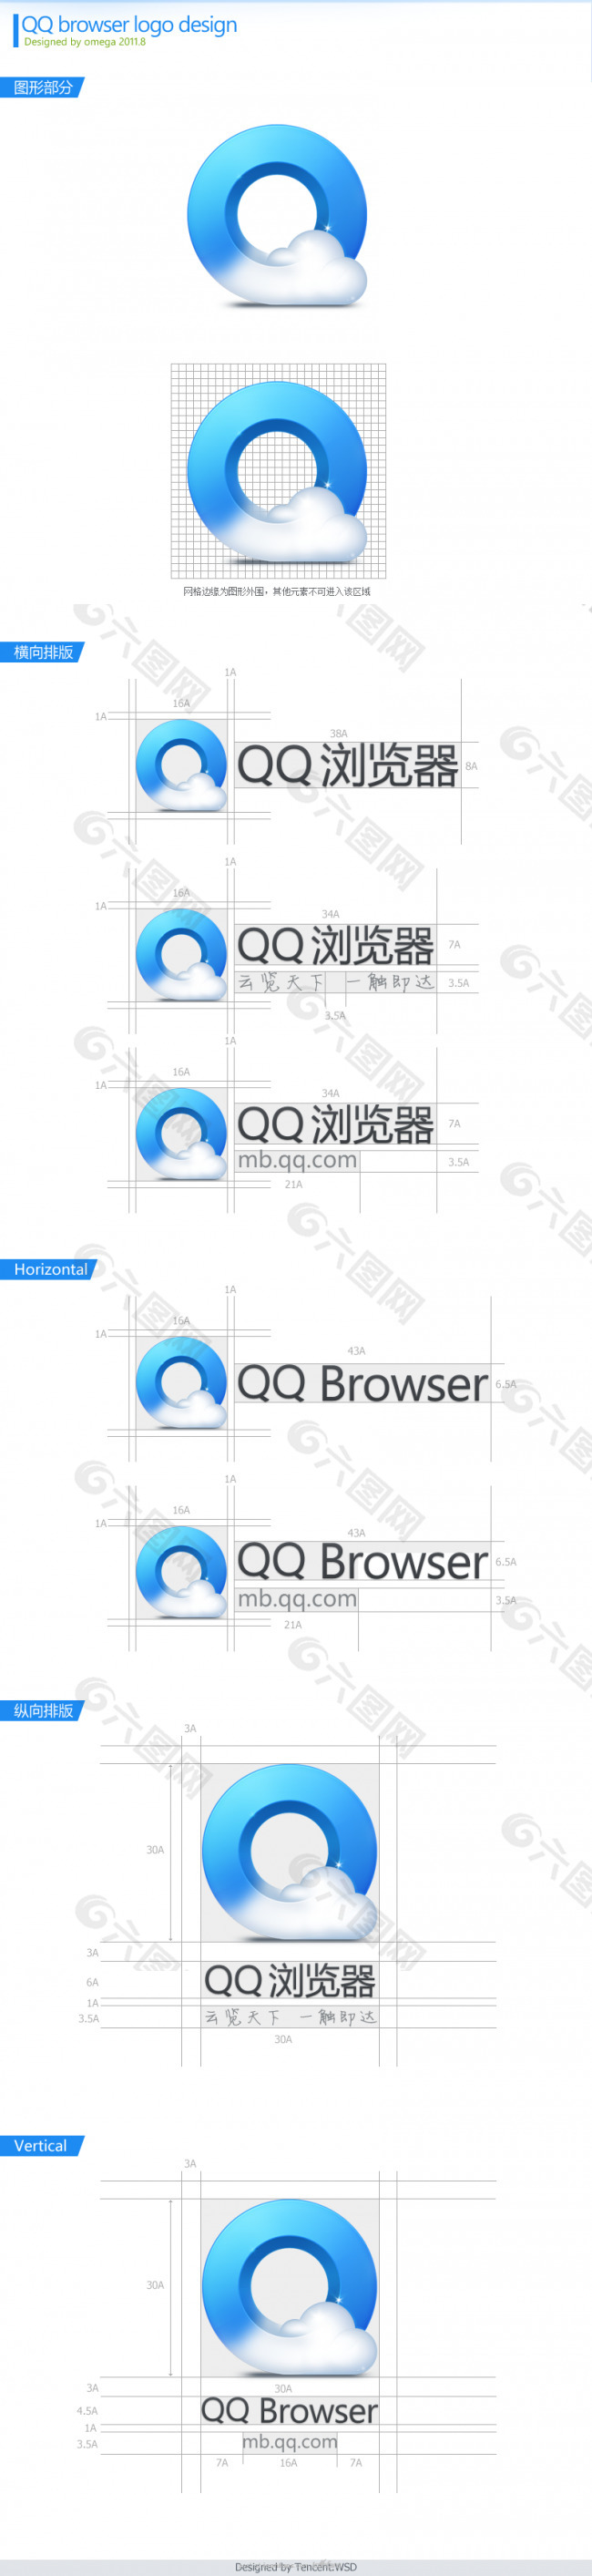 手机QQ浏览器logo设计 - 图标设计粉丝团 - ICONFANS - Powered by Discuz!